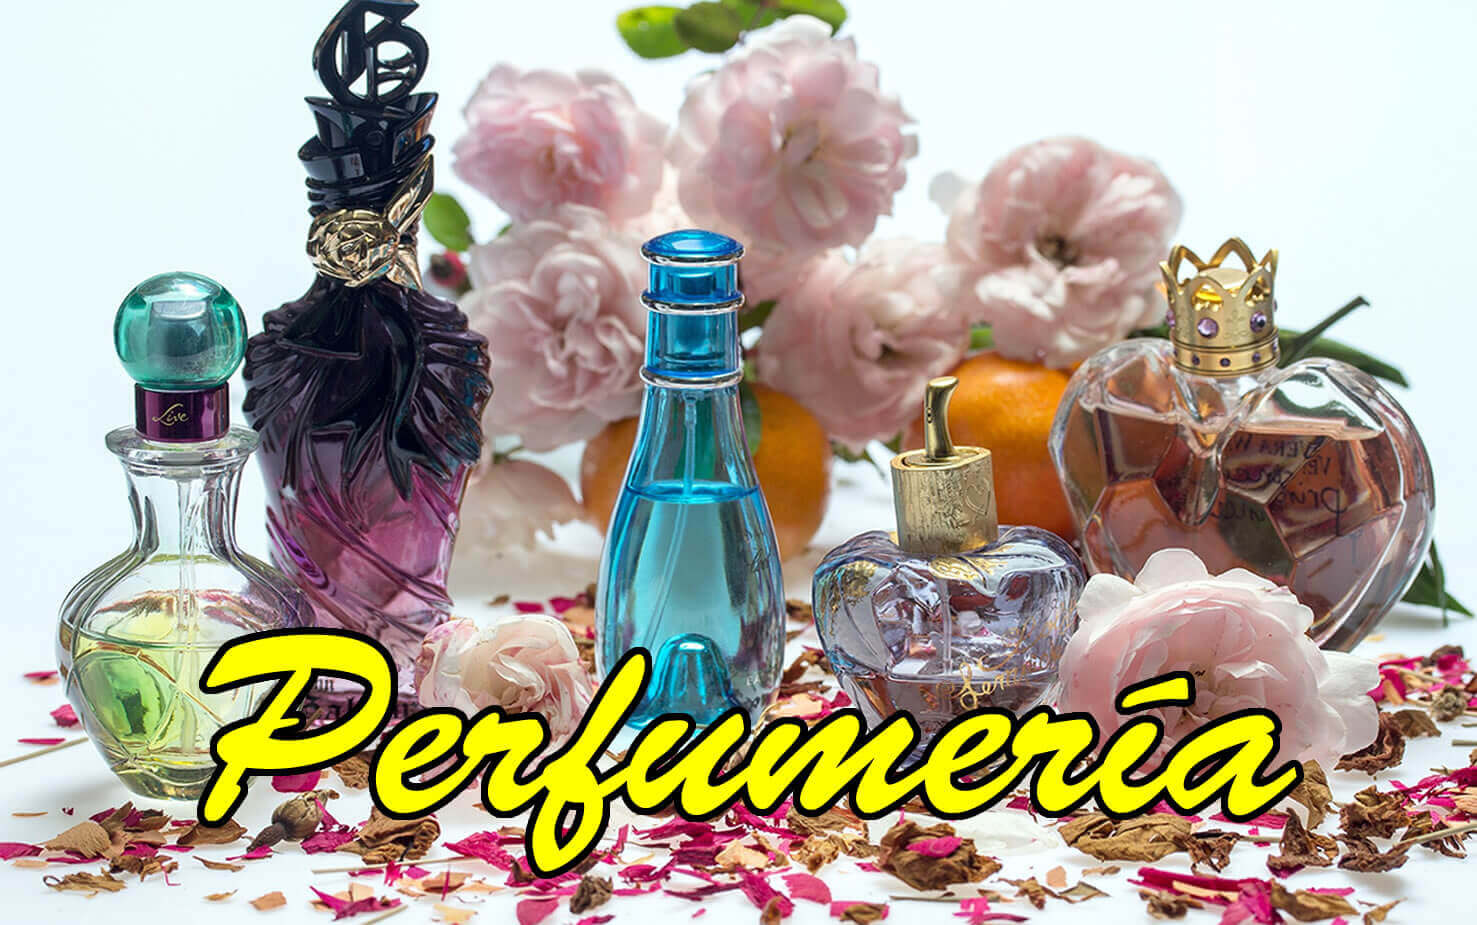 perfumeria